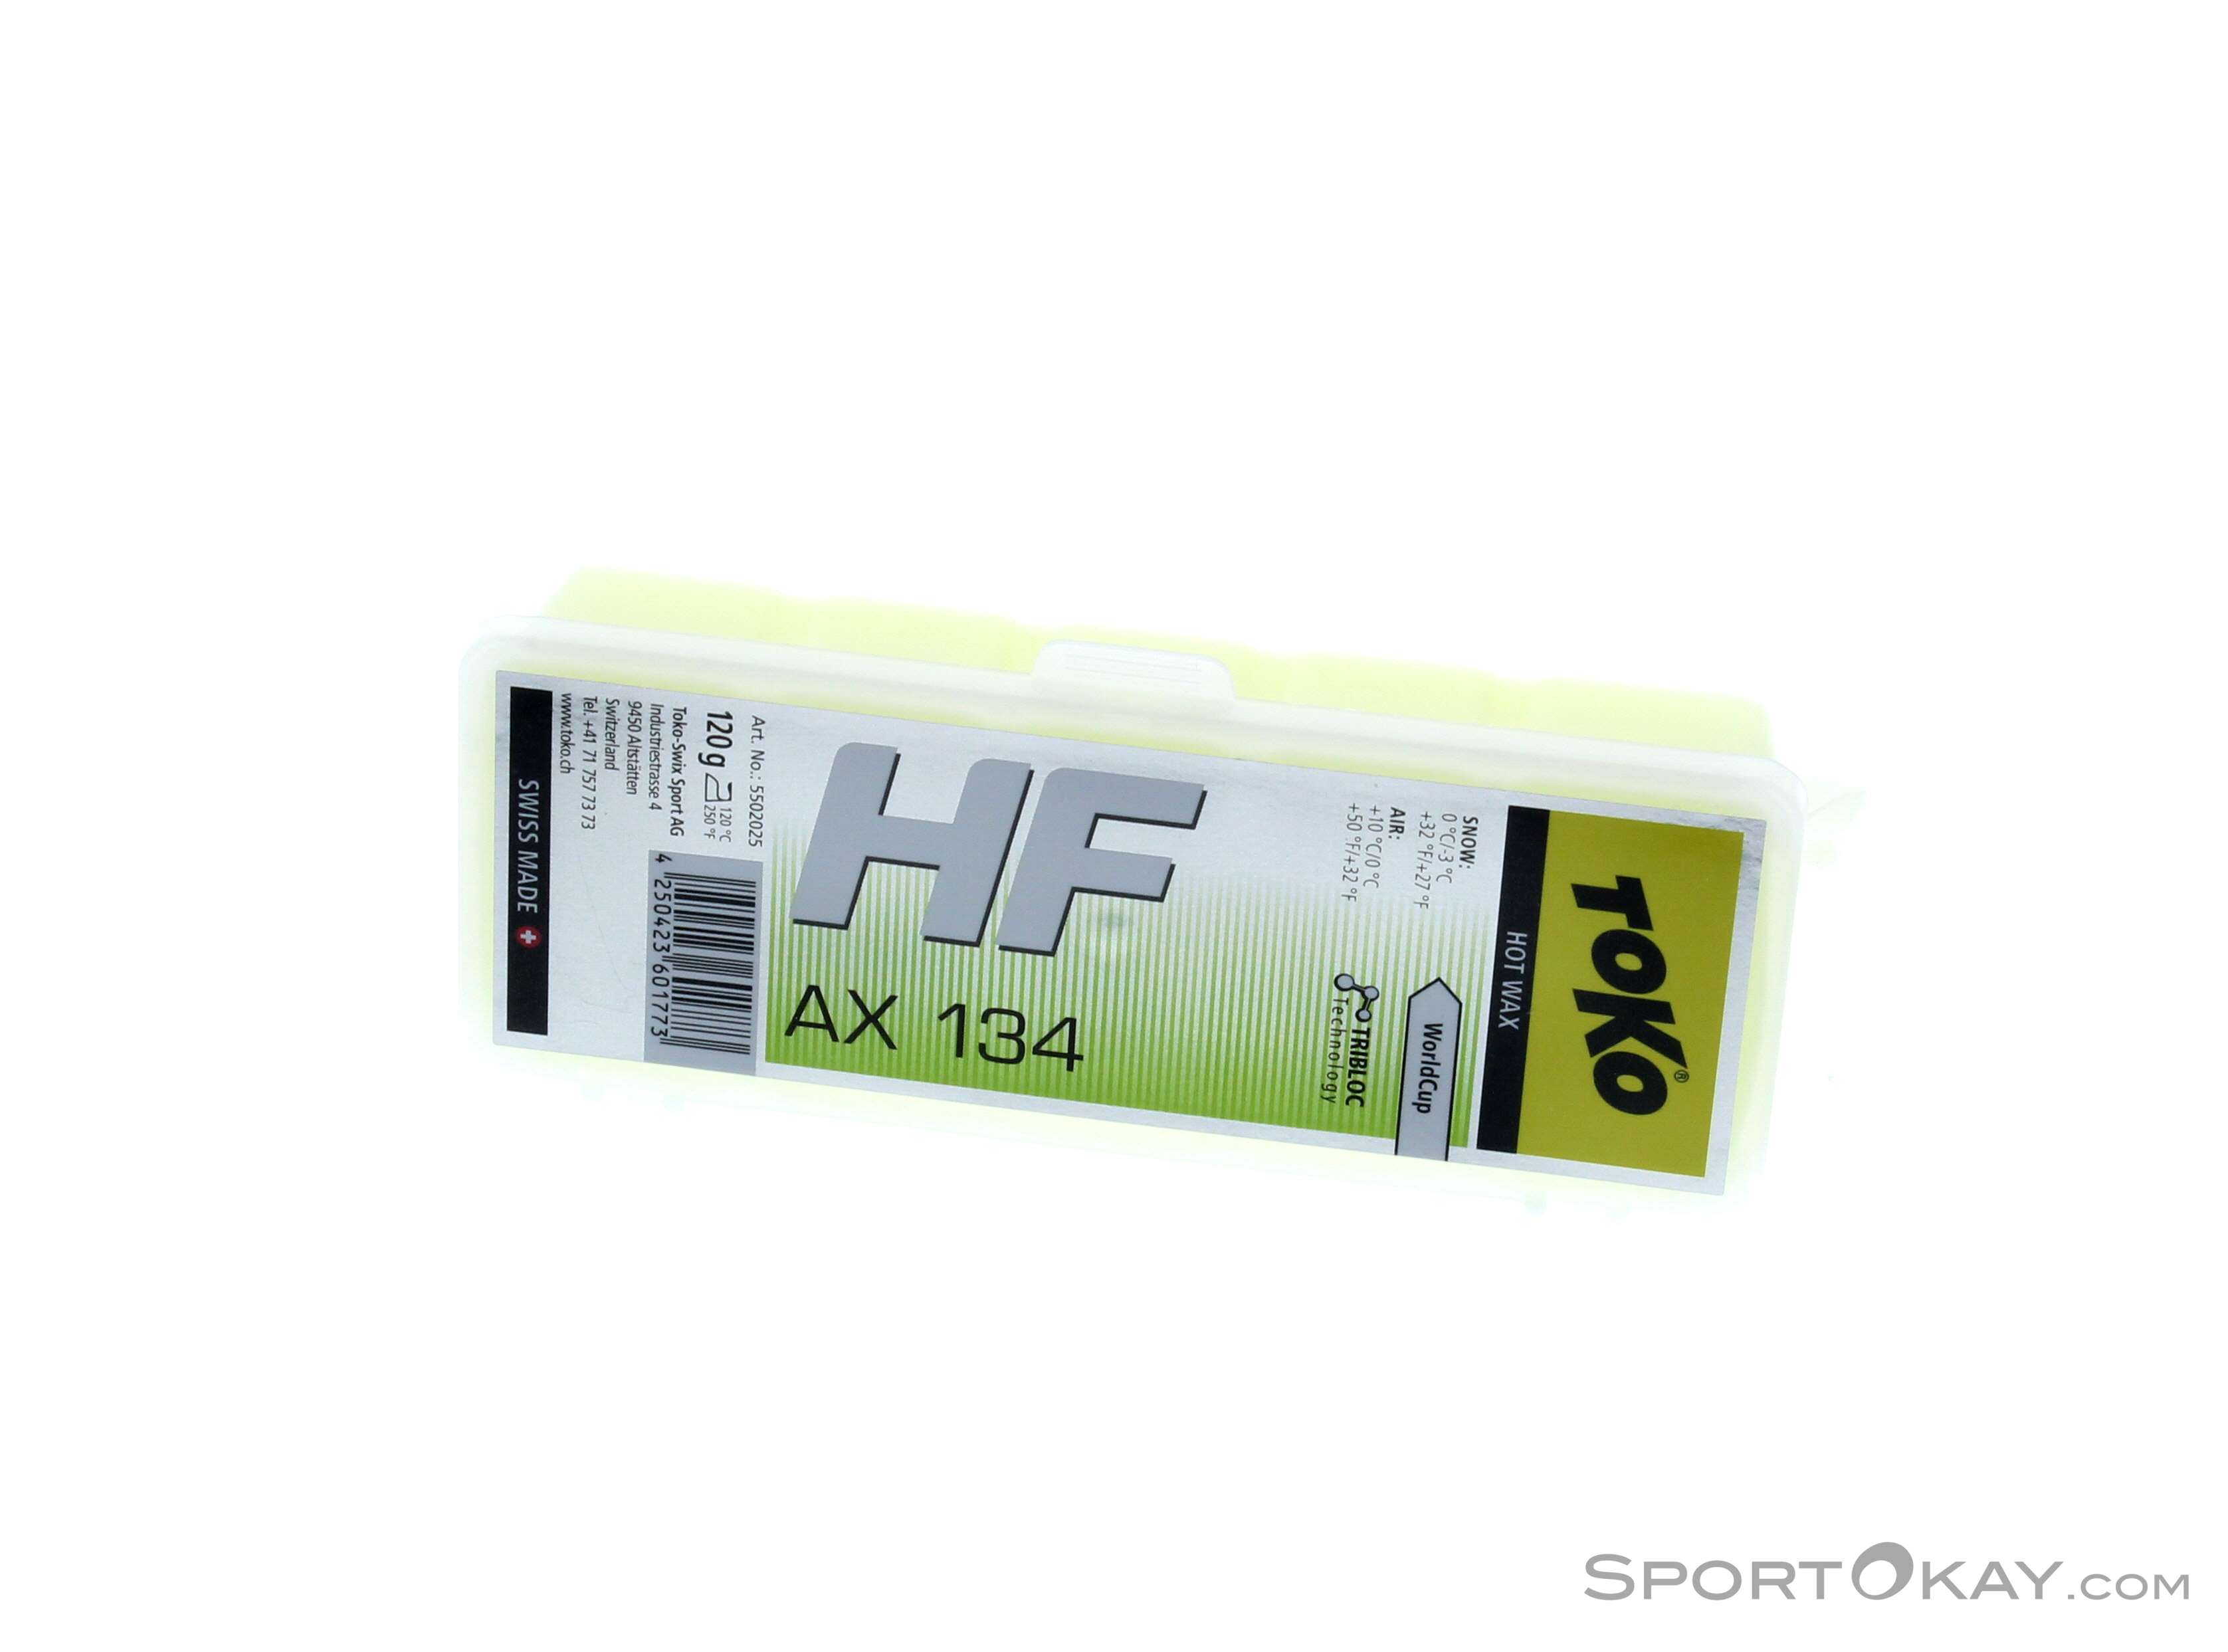 Toko HF Hot Wax AX134 120g Wax - Wax - Ski Care - Ski & Freeride - All